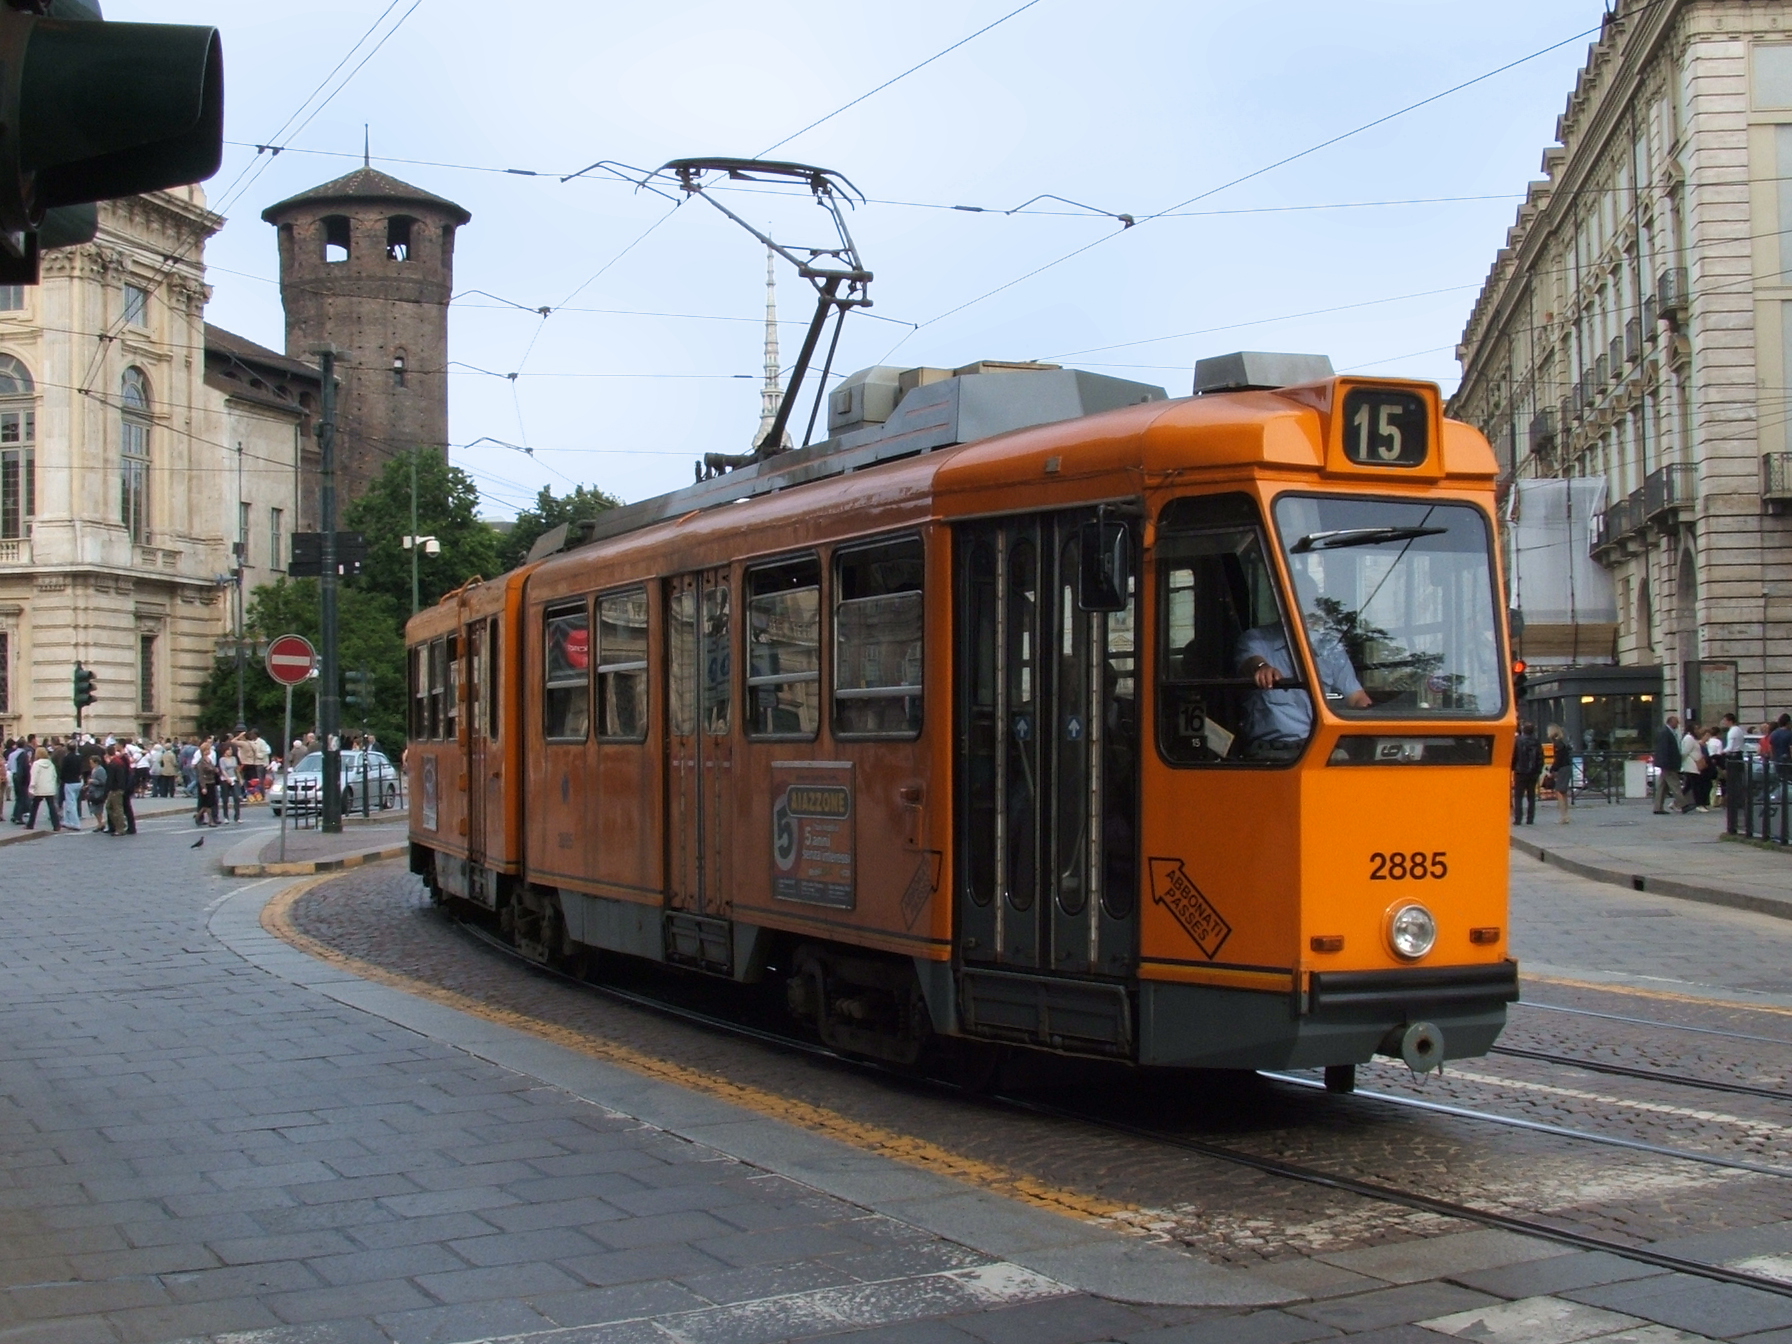 Rivoluzione Gtt, a Torino si inizia con i tram: al via priorità semaforica e taglio delle fermate